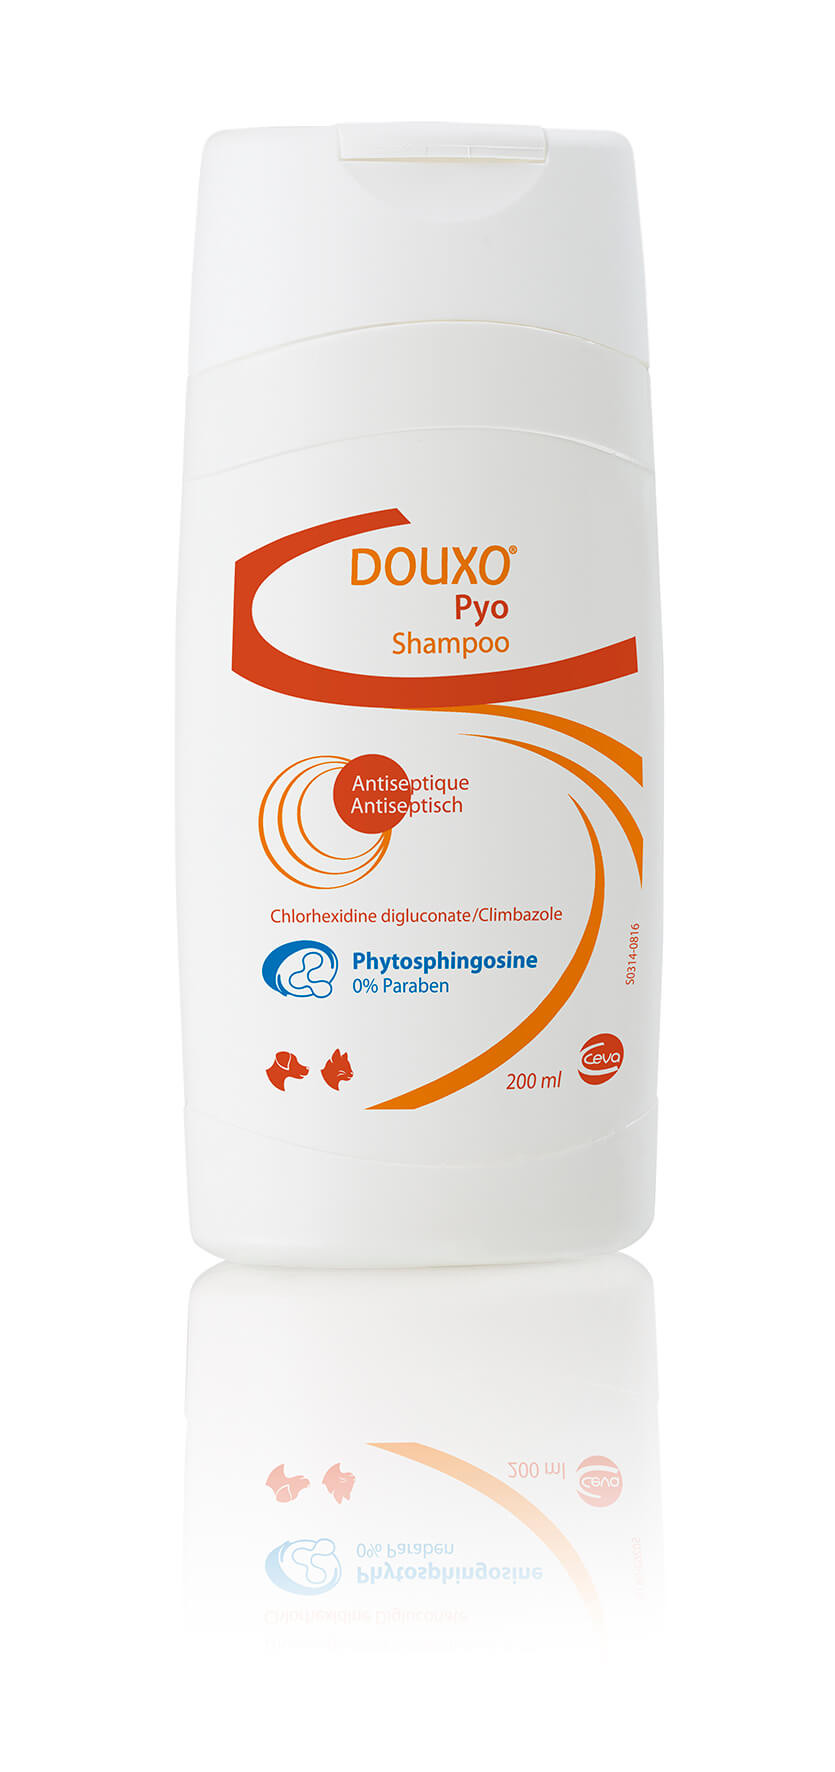 Douxo Pyo Shampoo